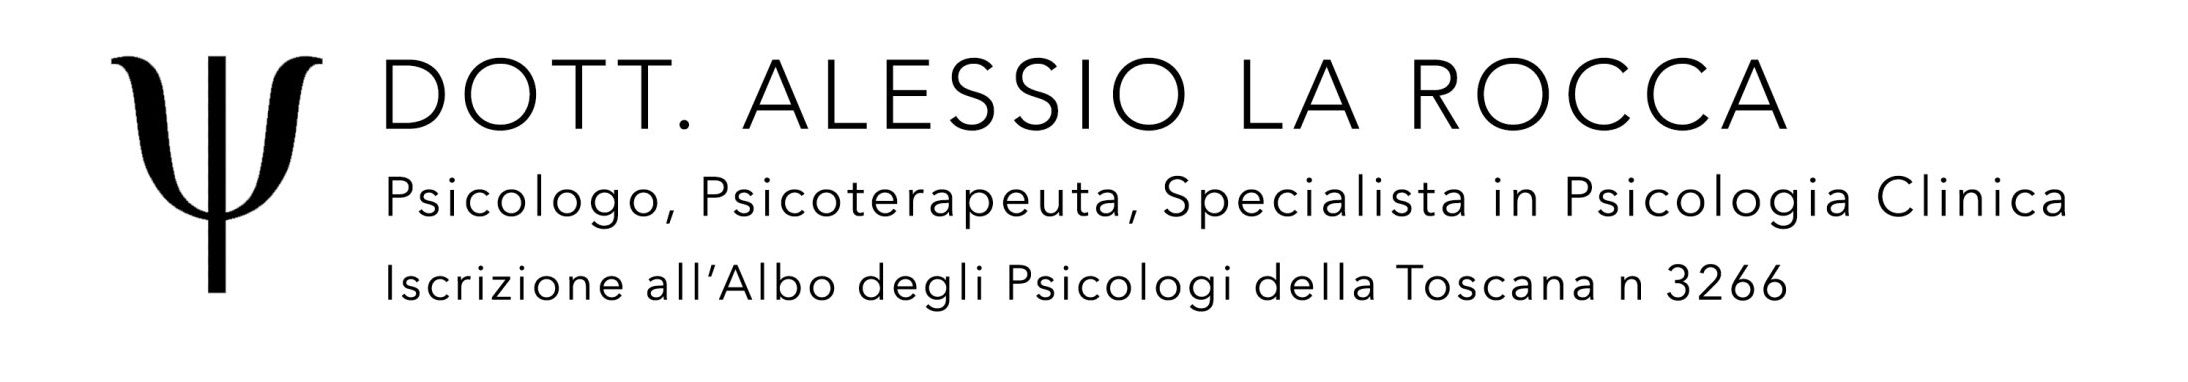 Dott. Alessio La Rocca